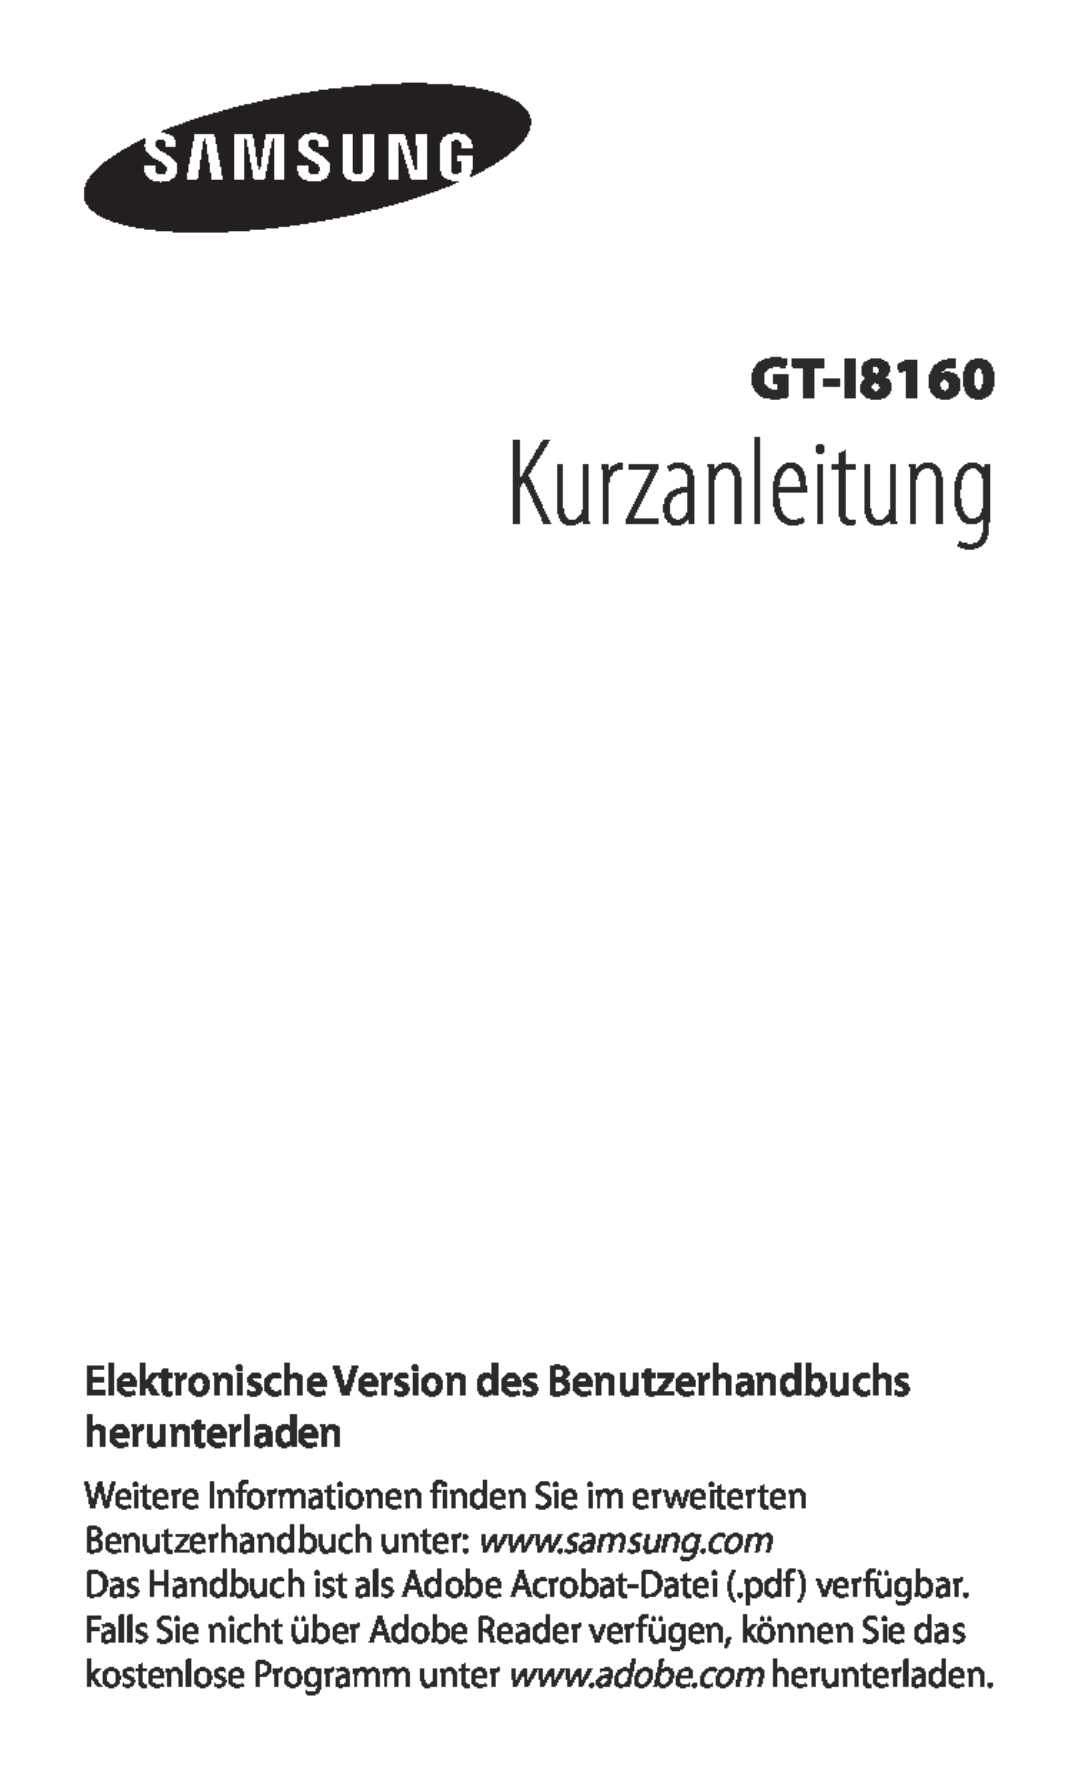 Samsung GT-I8160OKAEPL, GT-I8160ZWADBT manual Kurzanleitung, Elektronische Version des Benutzerhandbuchs herunterladen 